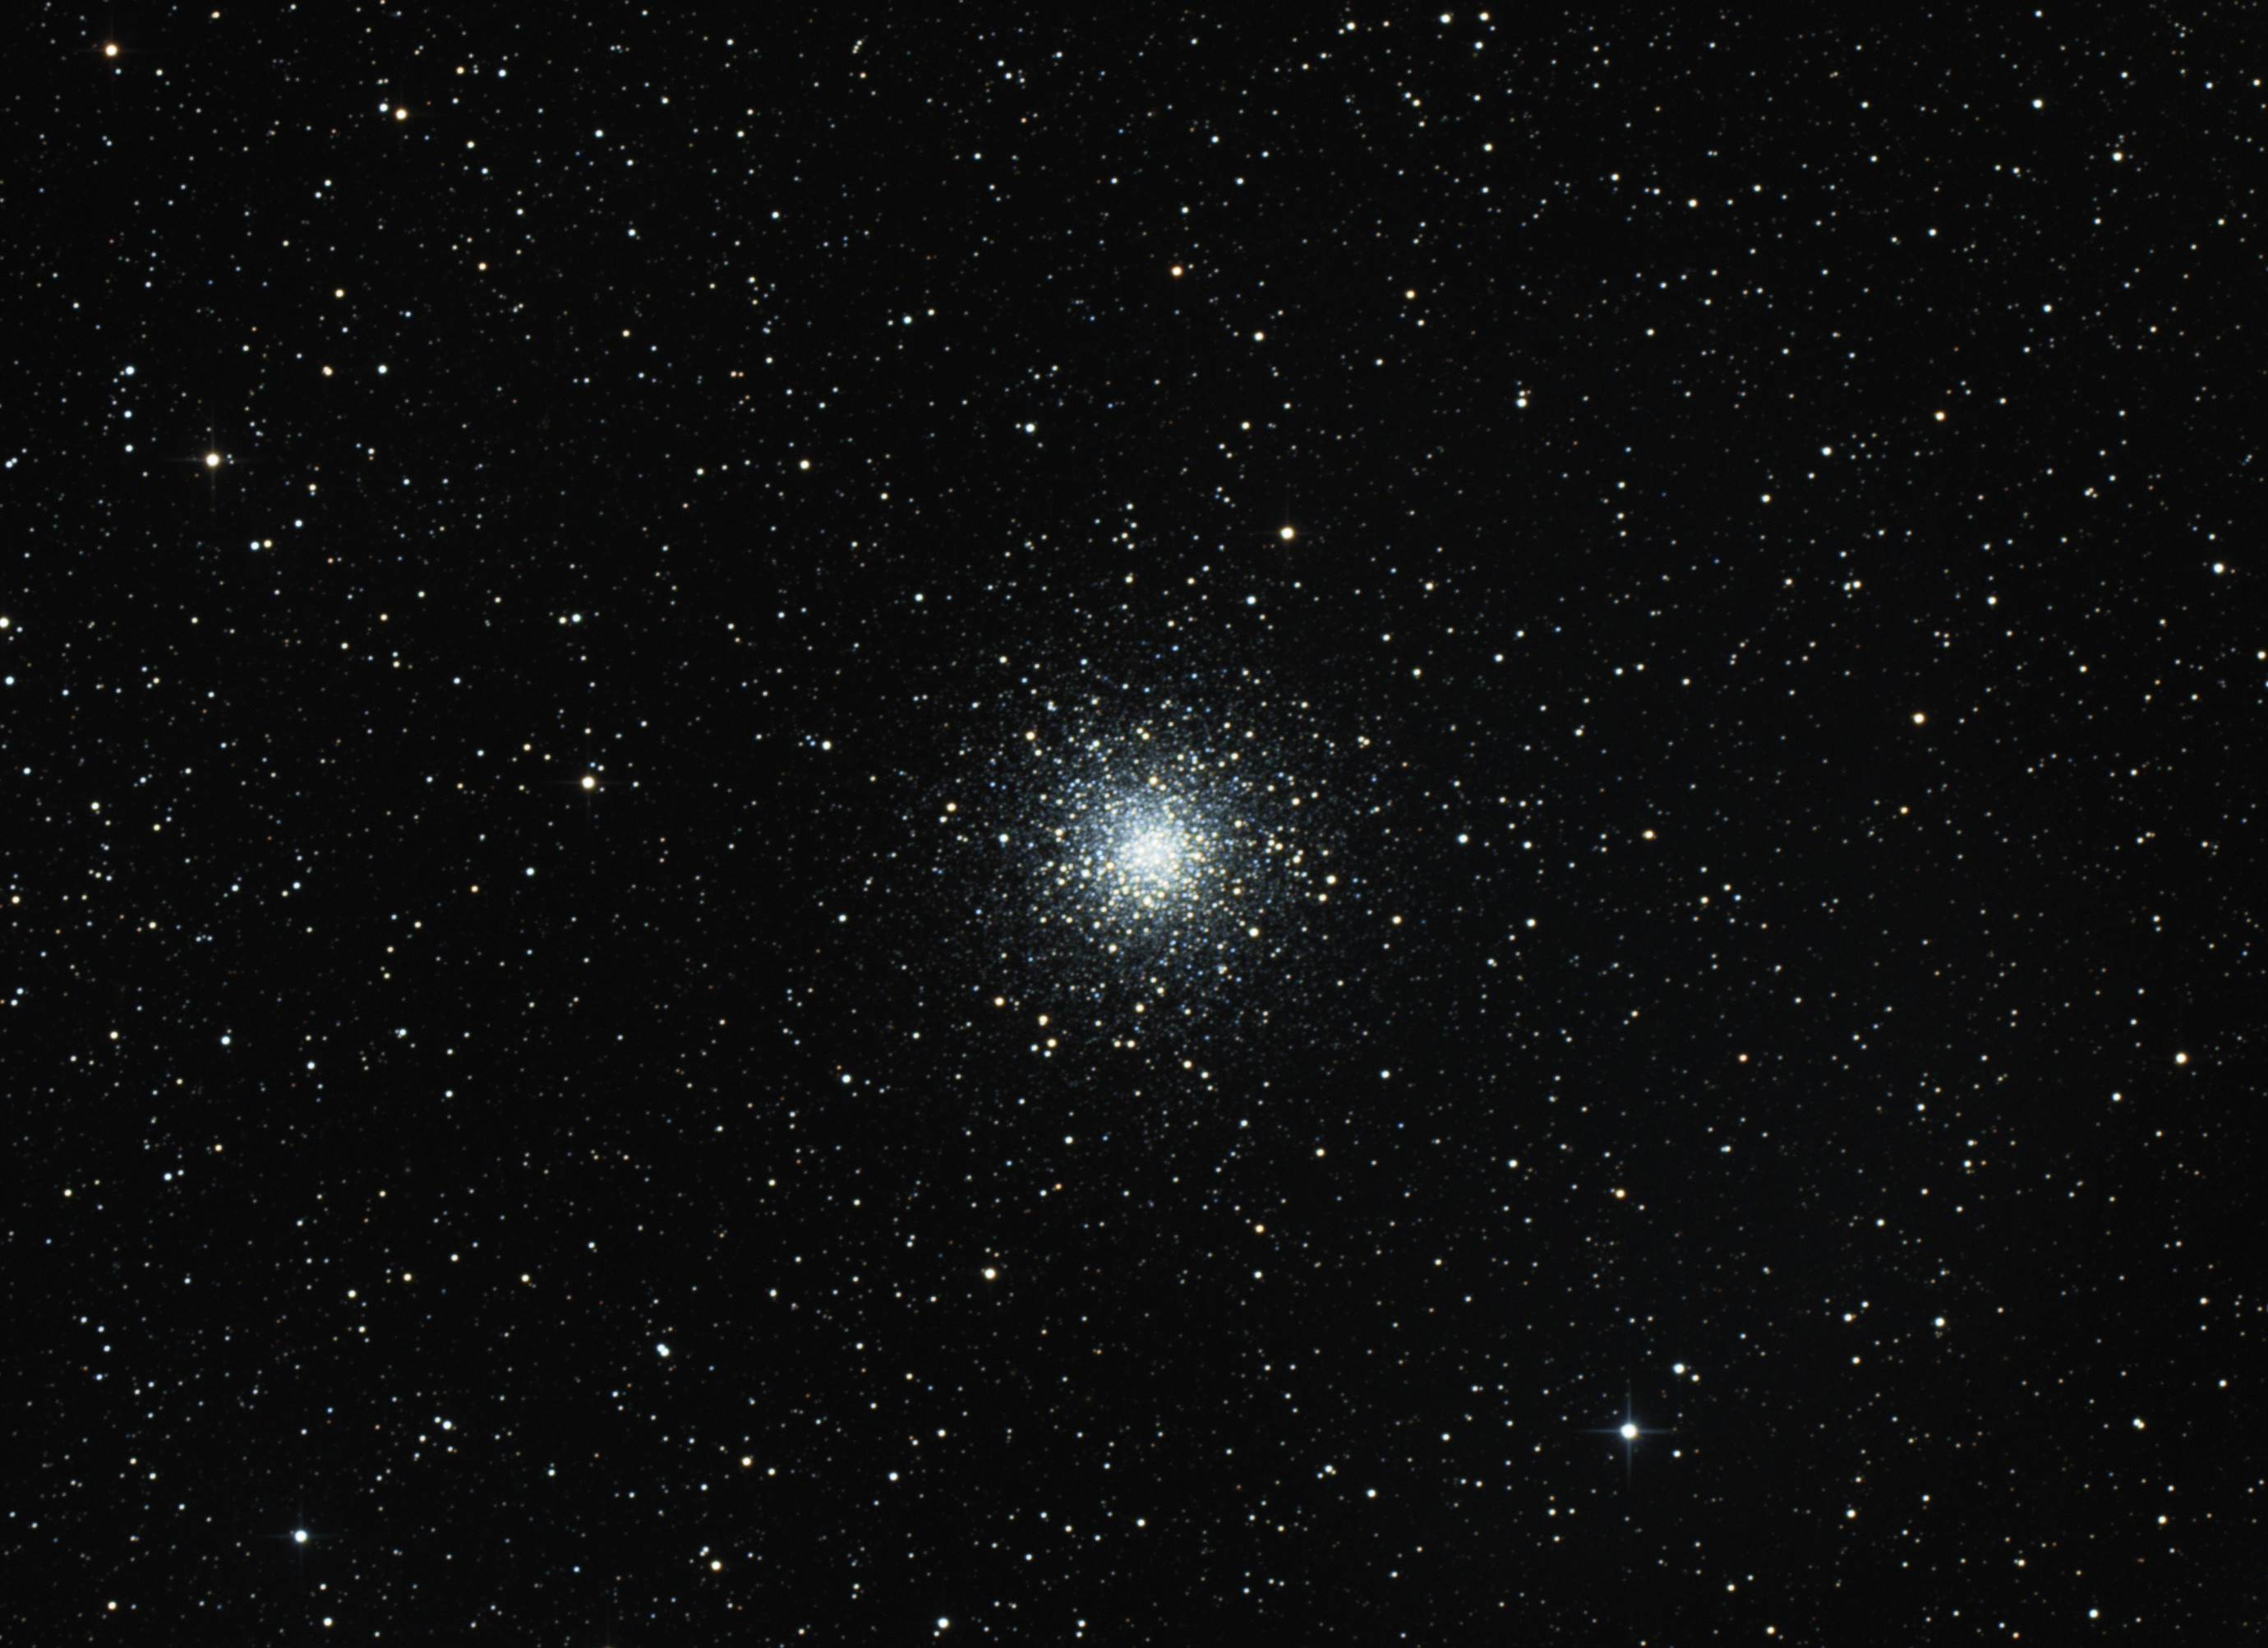 Messier 10